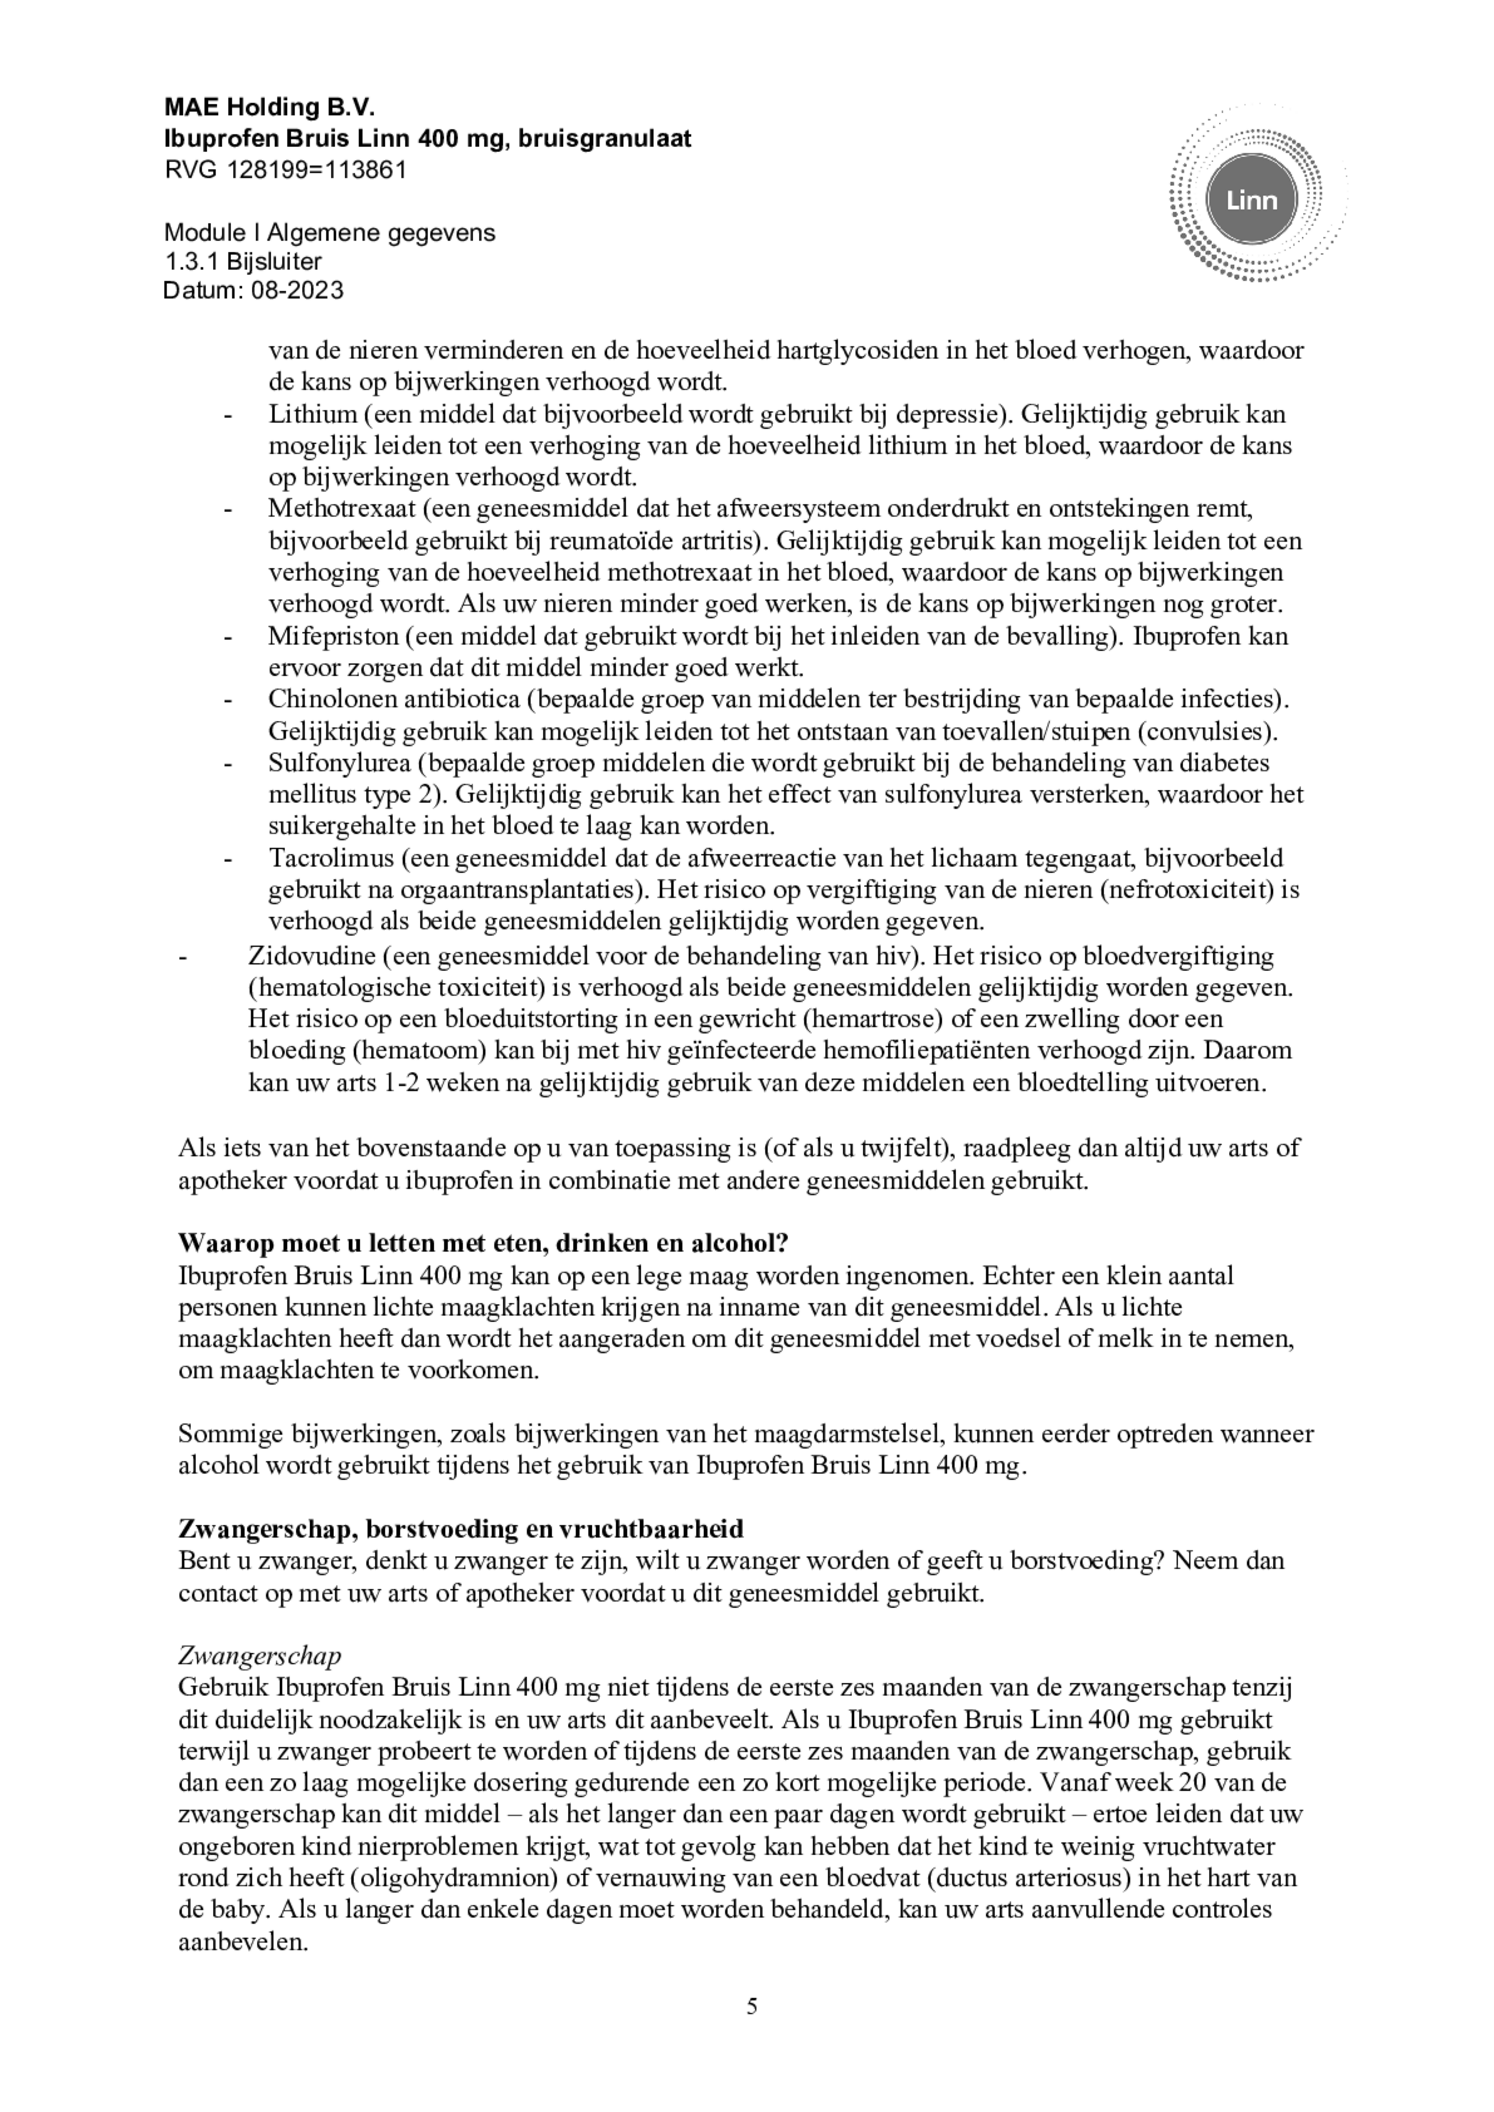 Ibuprofen Bruis Sachets 400mg afbeelding van document #5, bijsluiter